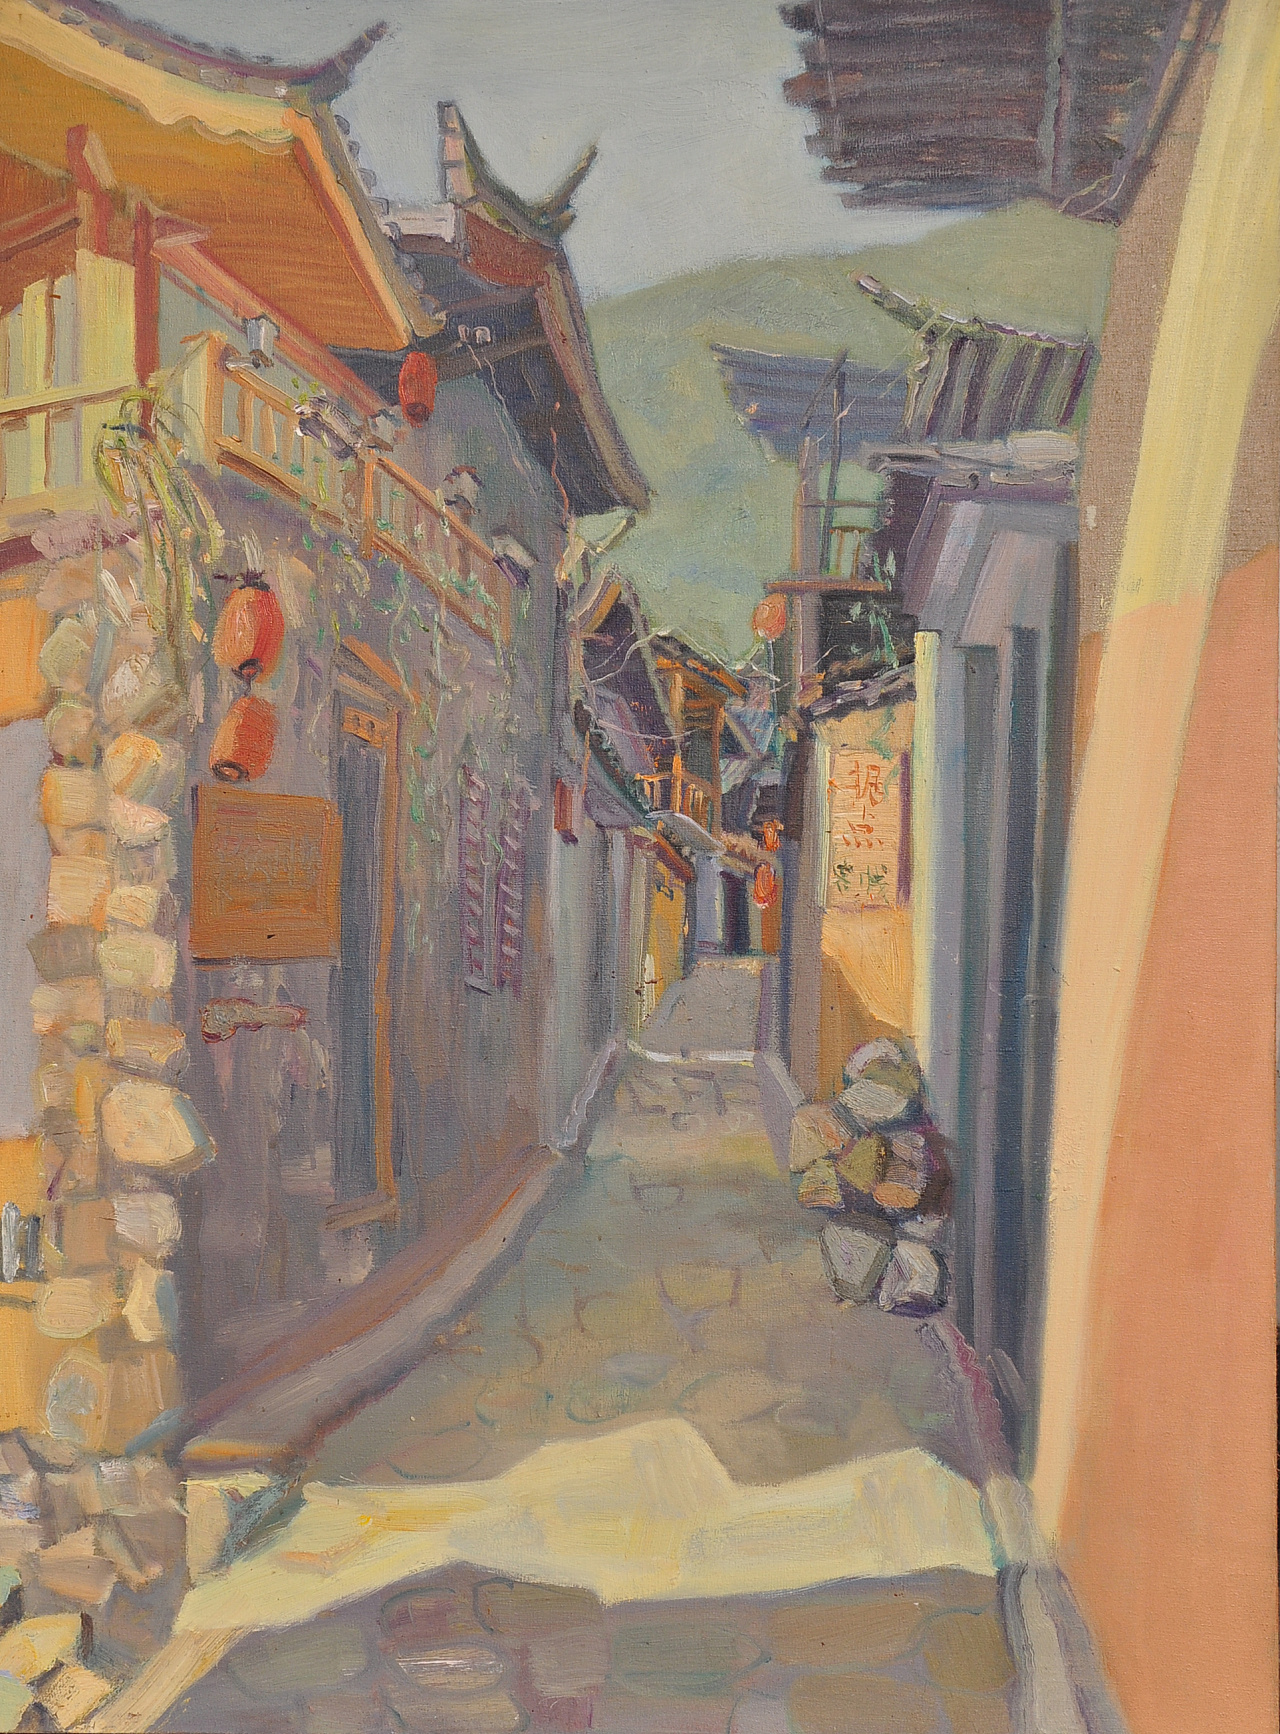 的巷子旁边画得,清晨的阳光洒在房屋的两边,勾勒出一笔笔温暖的色彩